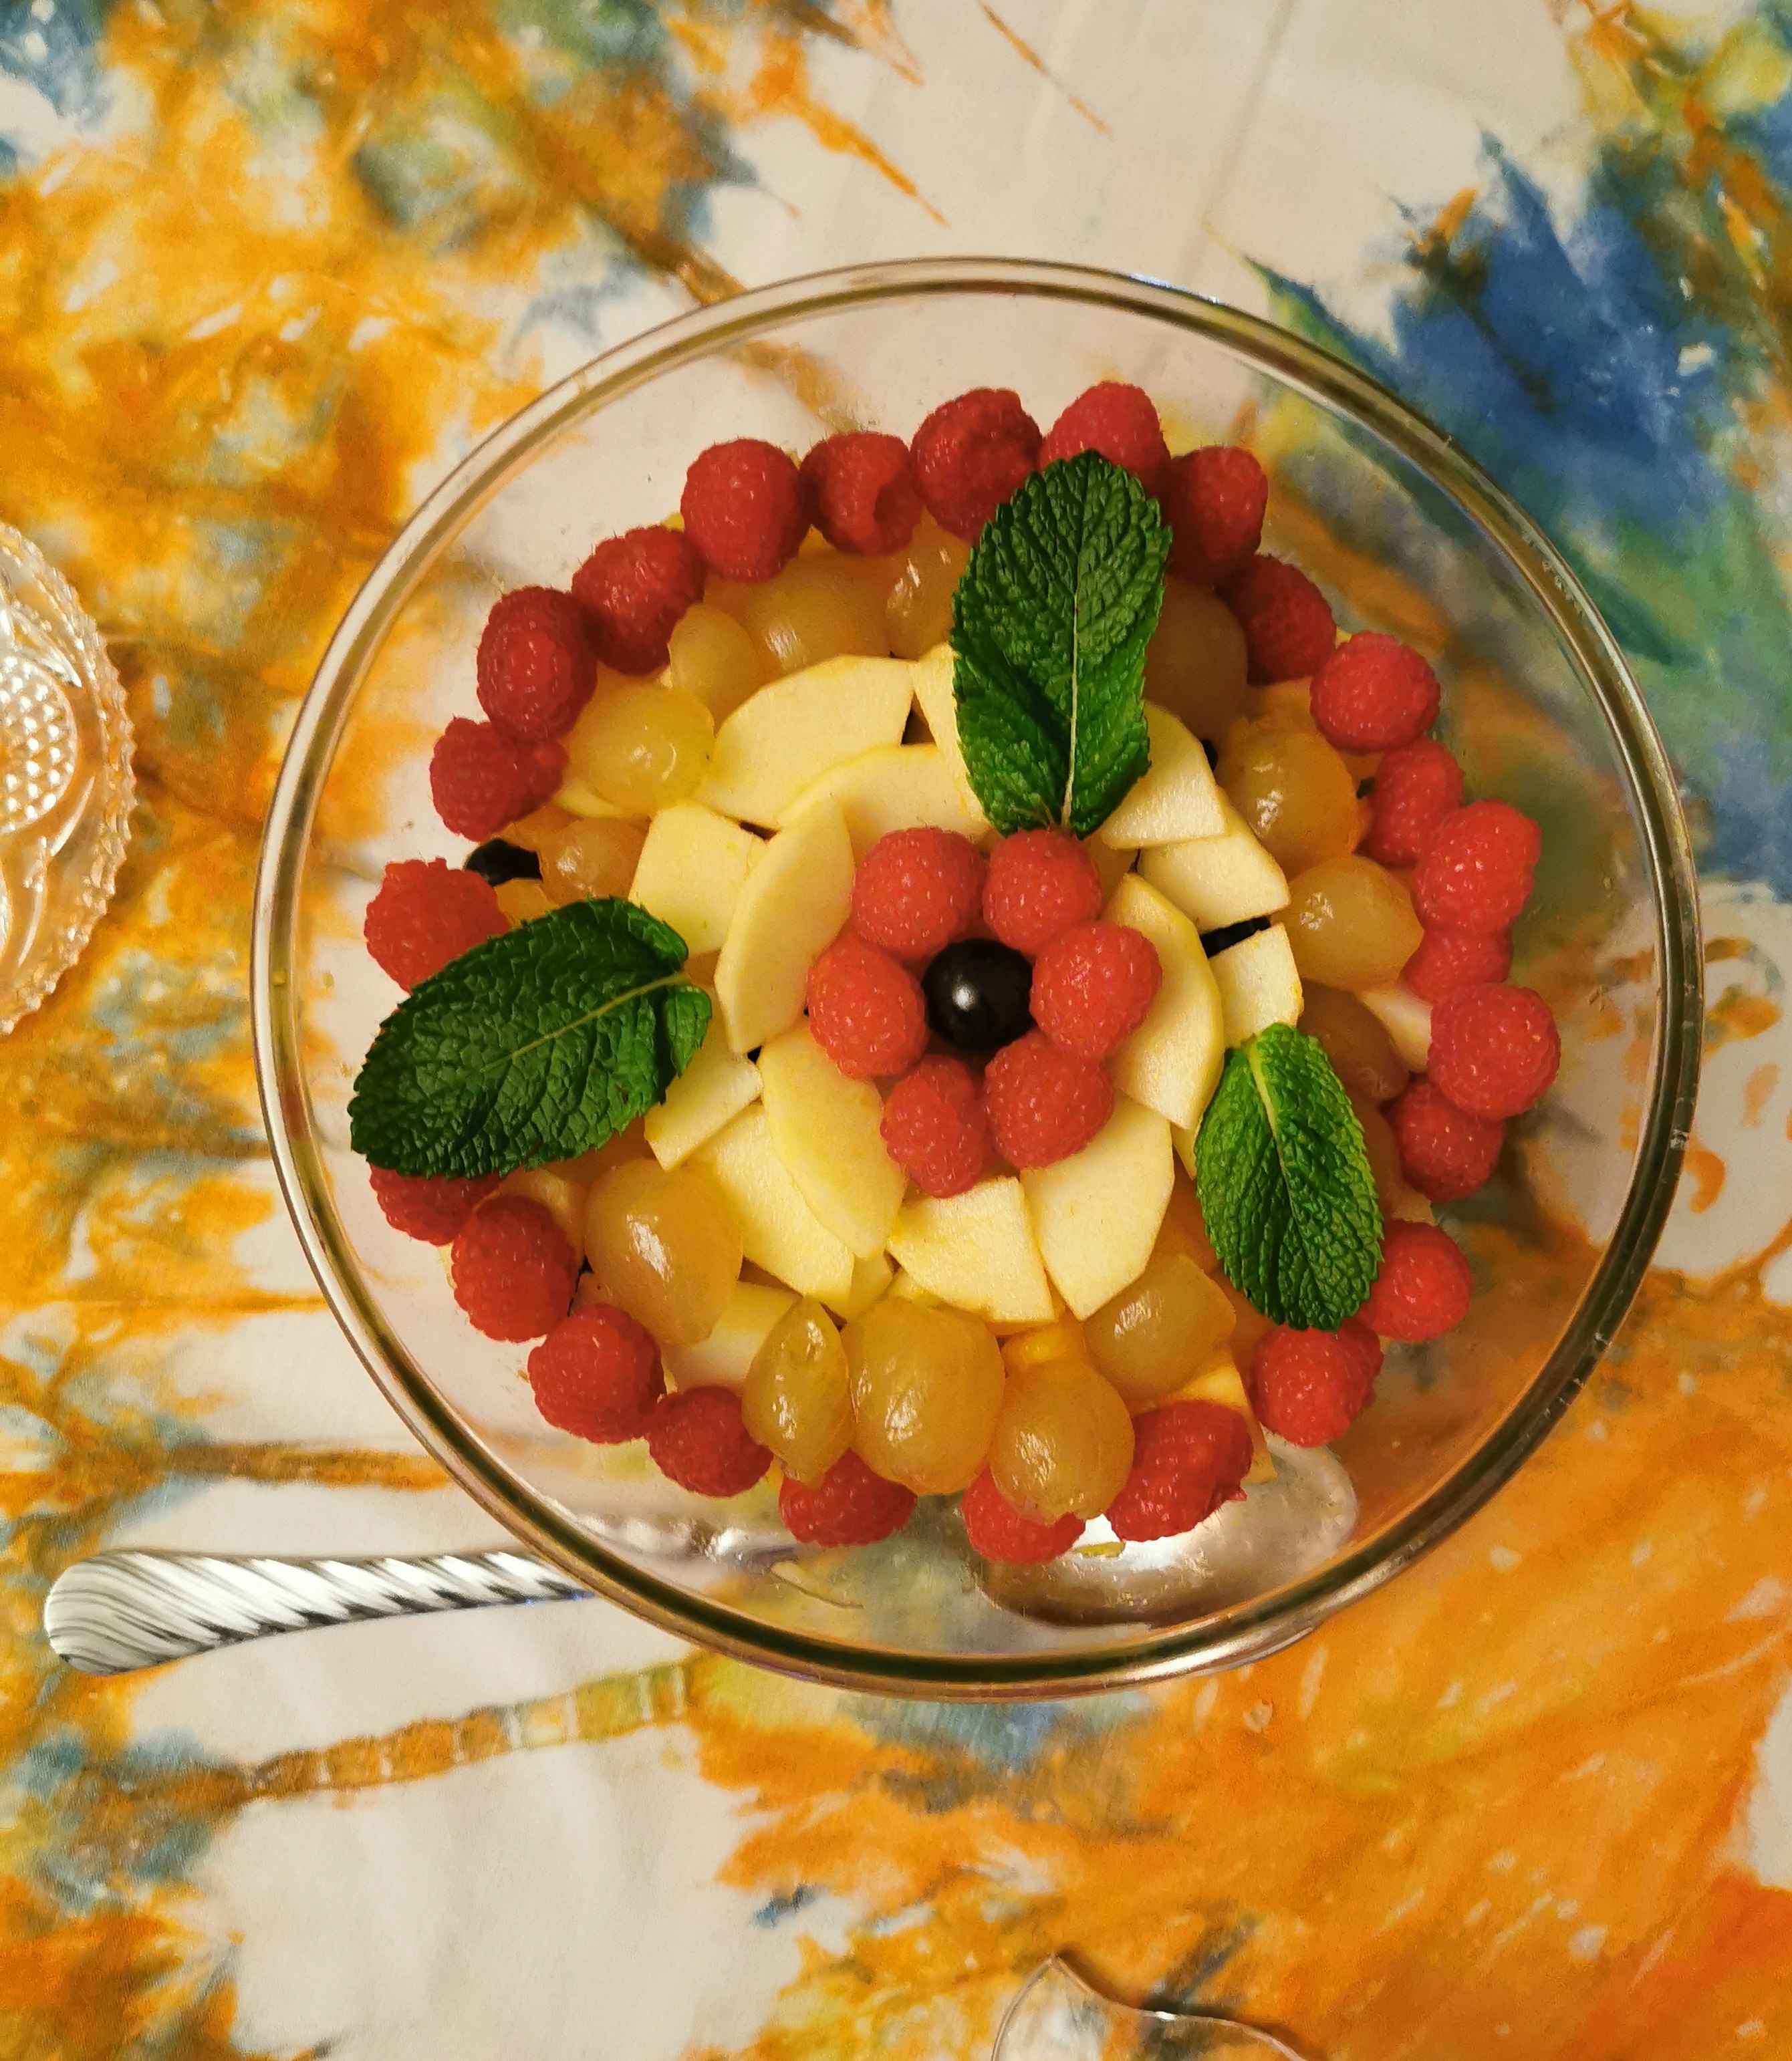 Salade de fruits 
🍇 Fraises
Feuilles de menthe
Pommes

